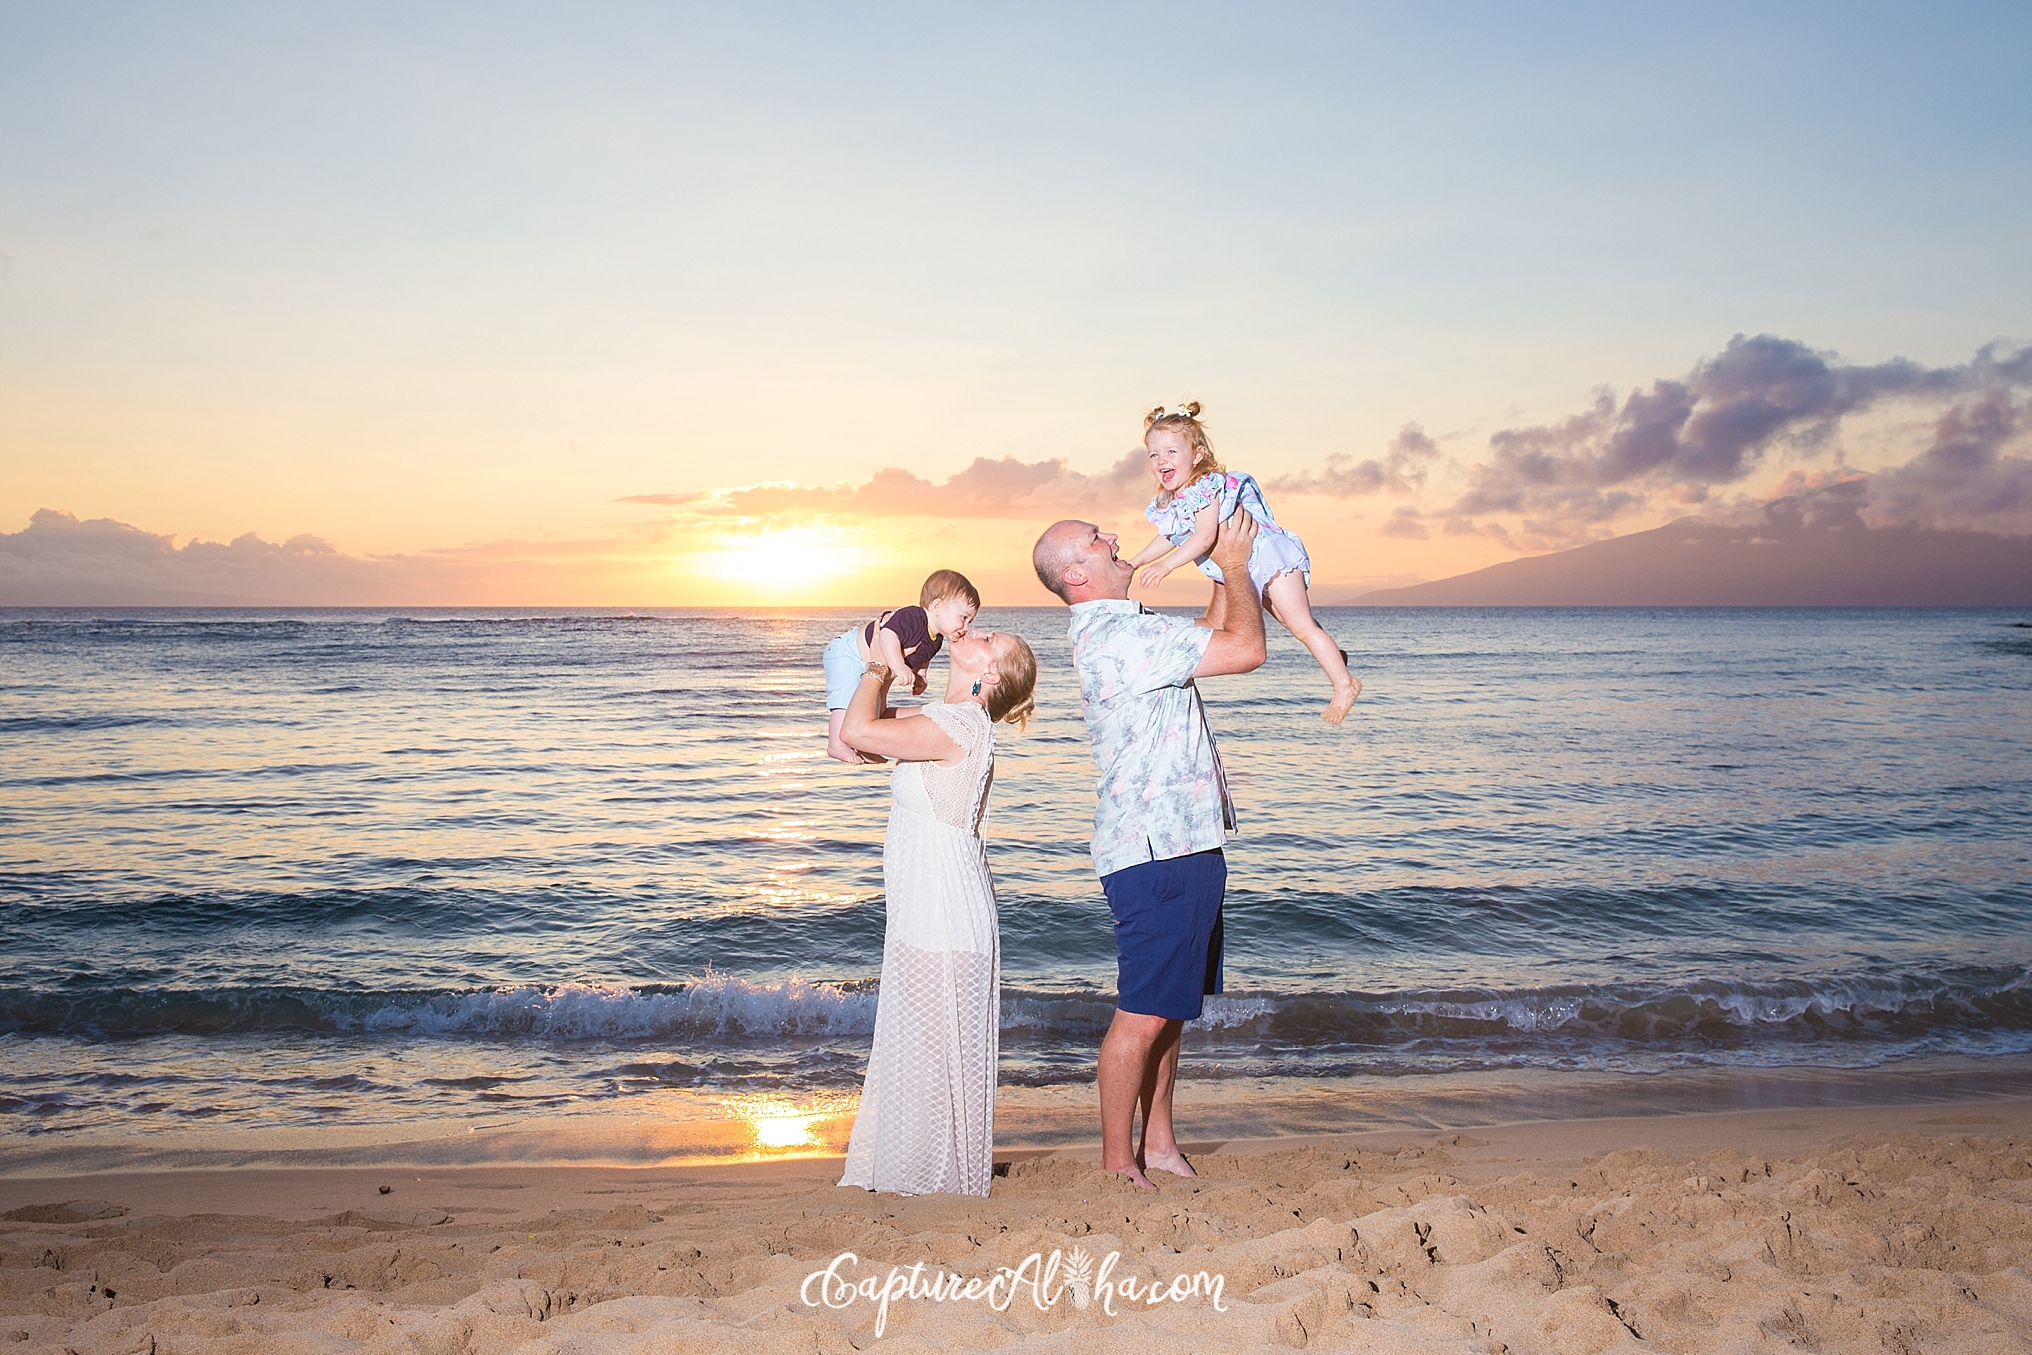 Maui Family Photography at Kapalua Bay at sunset